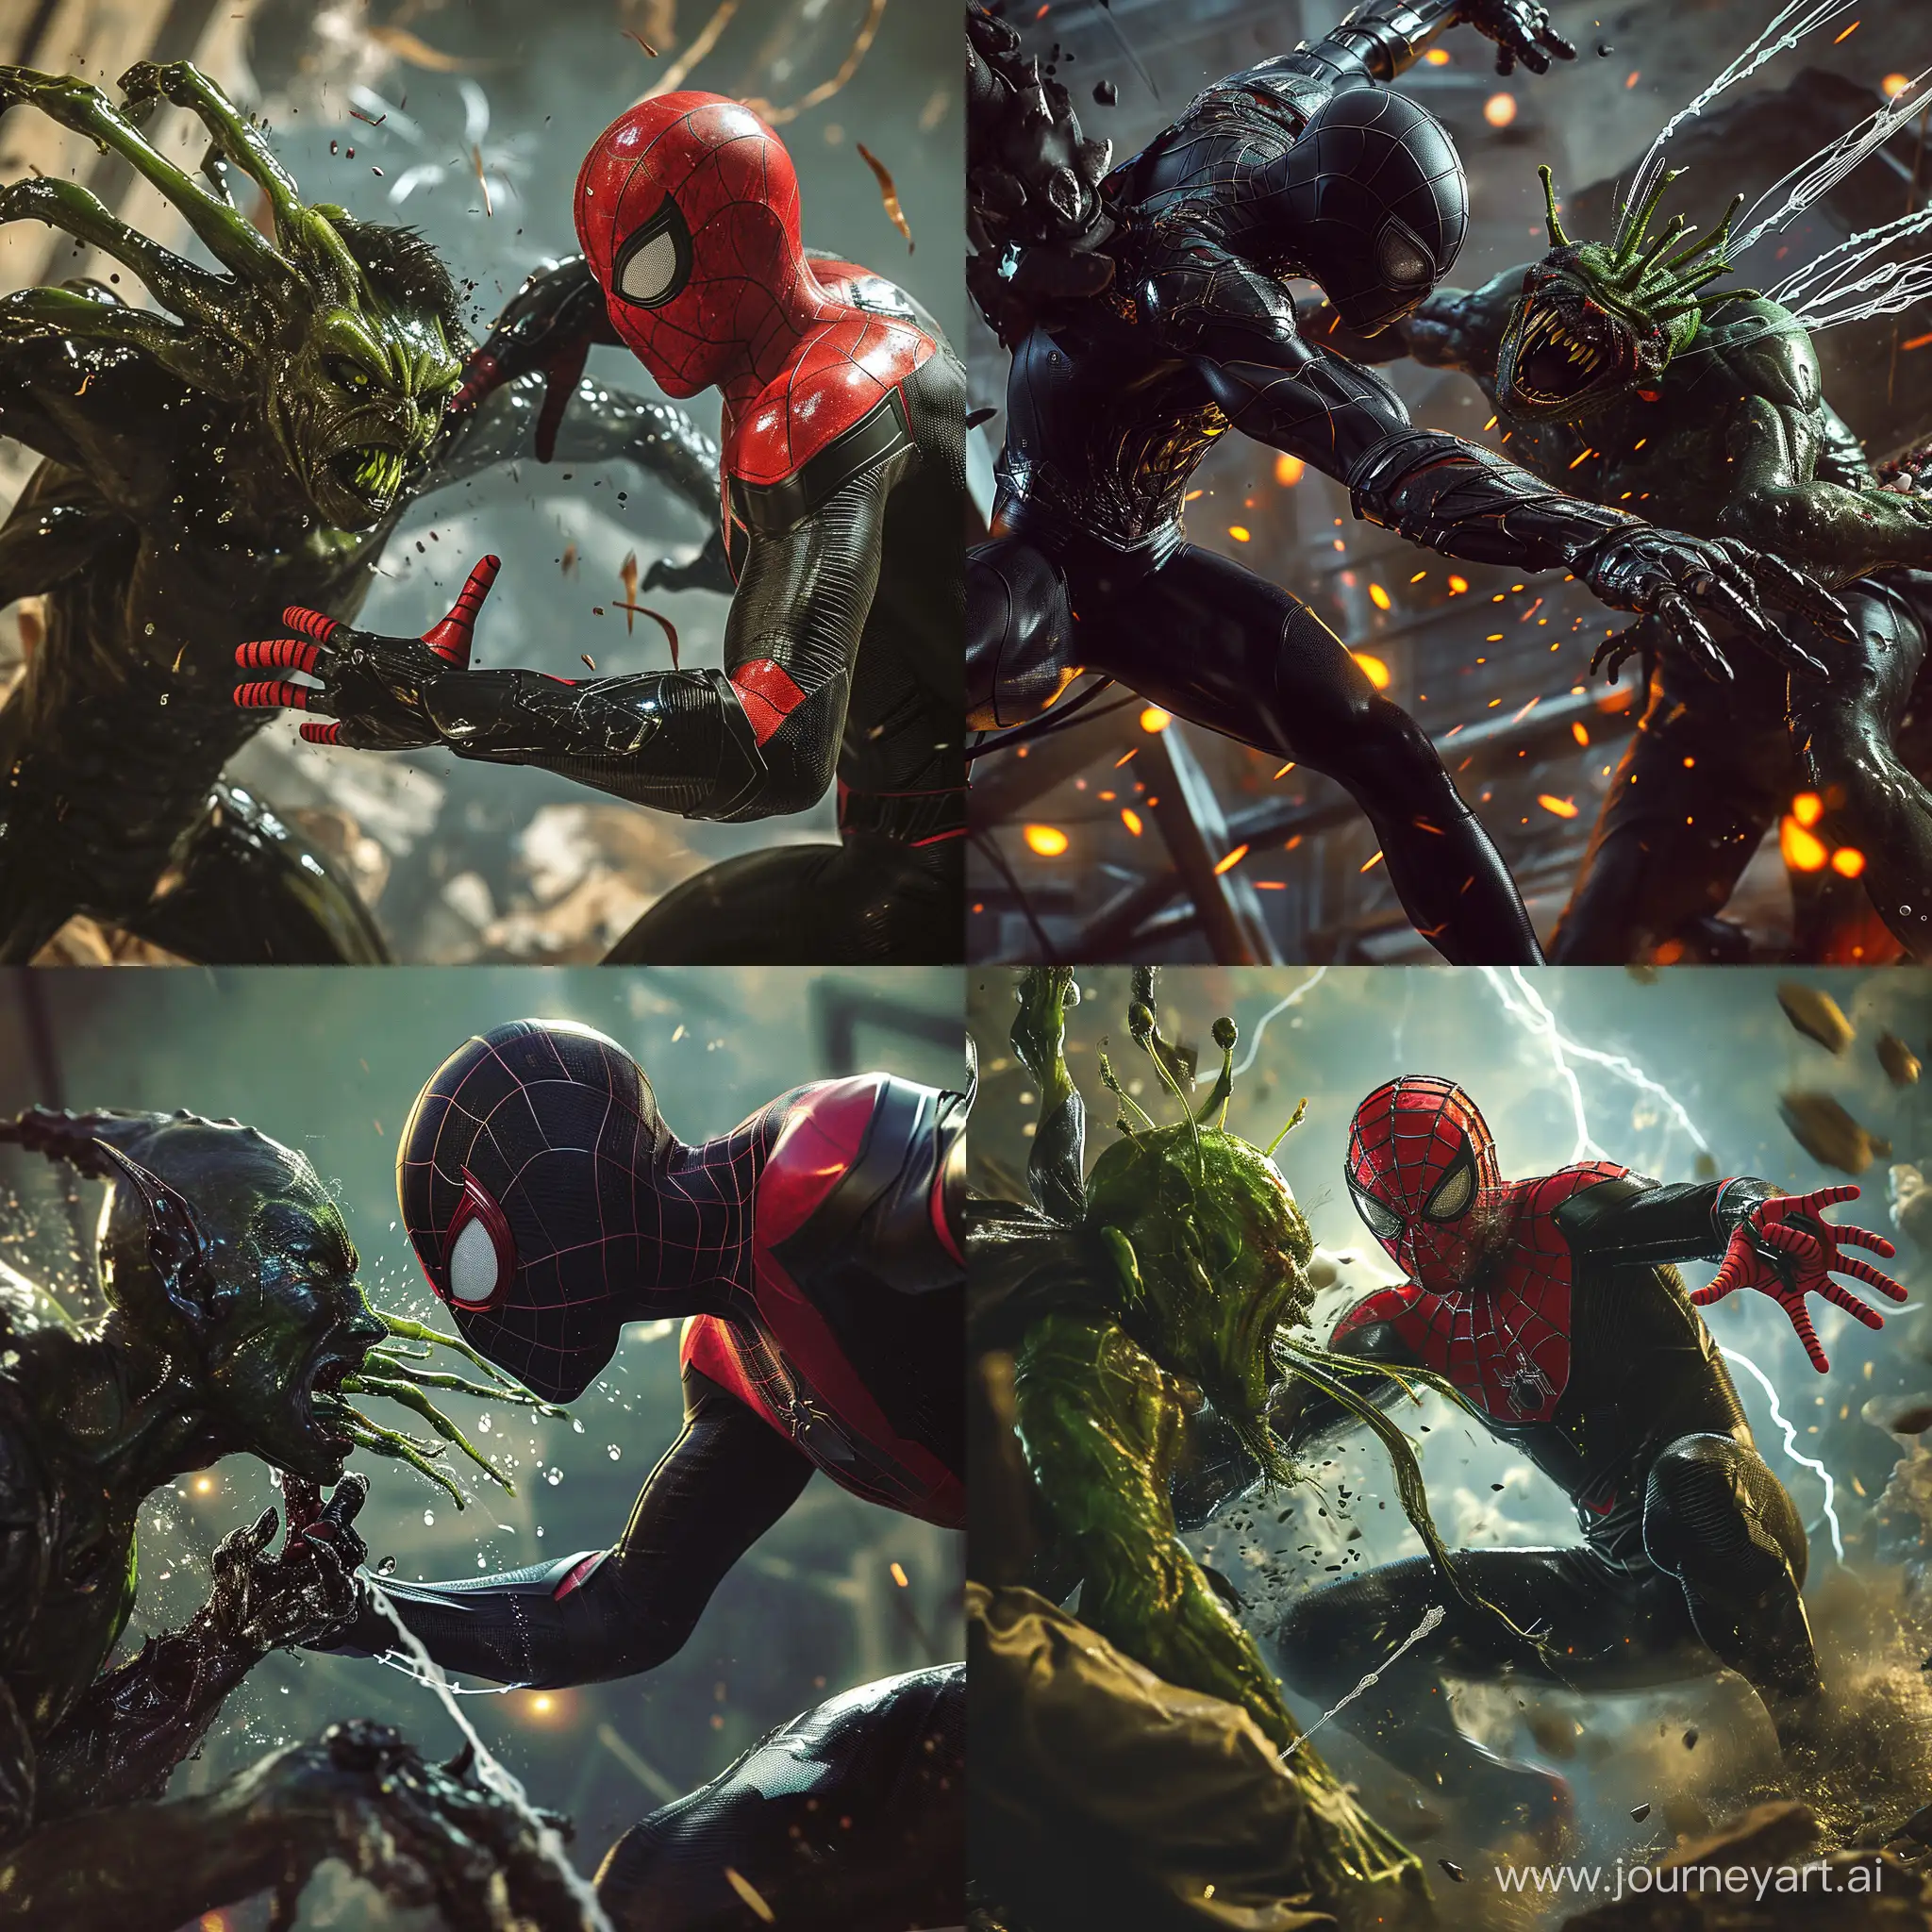 Epic-Battle-Spiderman-in-Iron-Black-Suit-vs-Sam-Raimi-Green-Goblin-in-Cinematic-8K-Detail